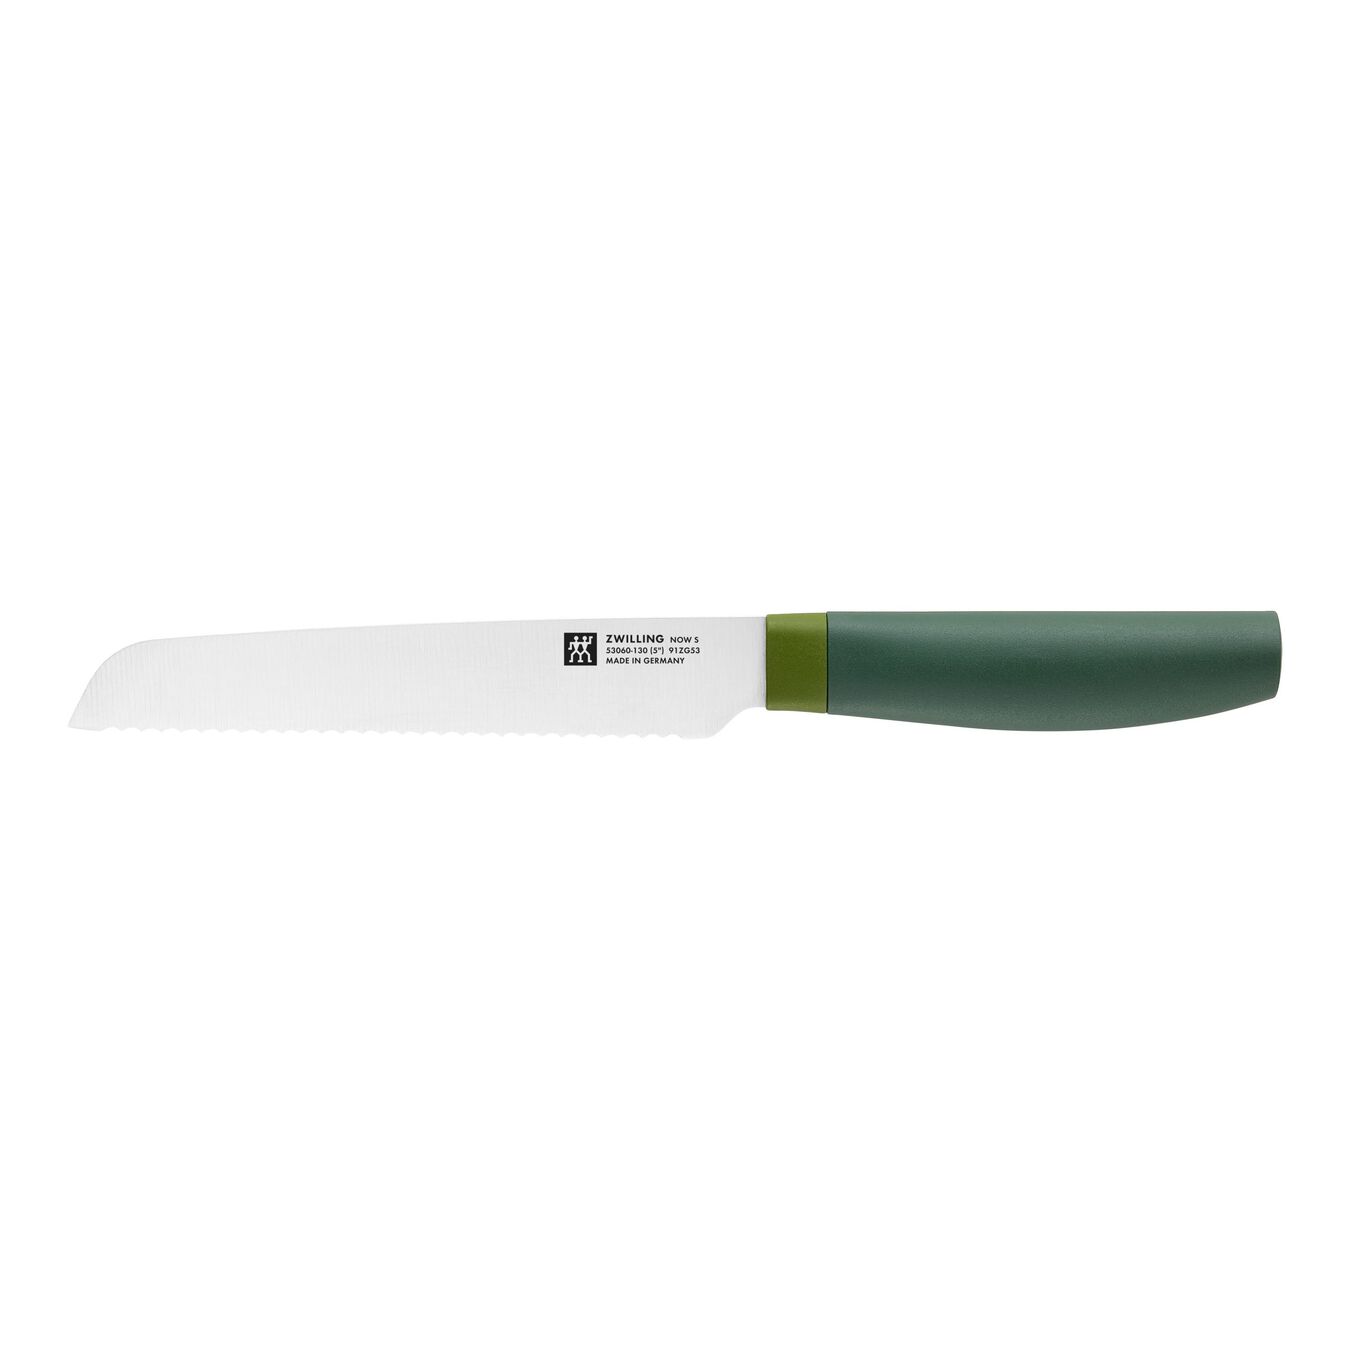 Taco de cuchillos 8-pzs, Verde,,large 3